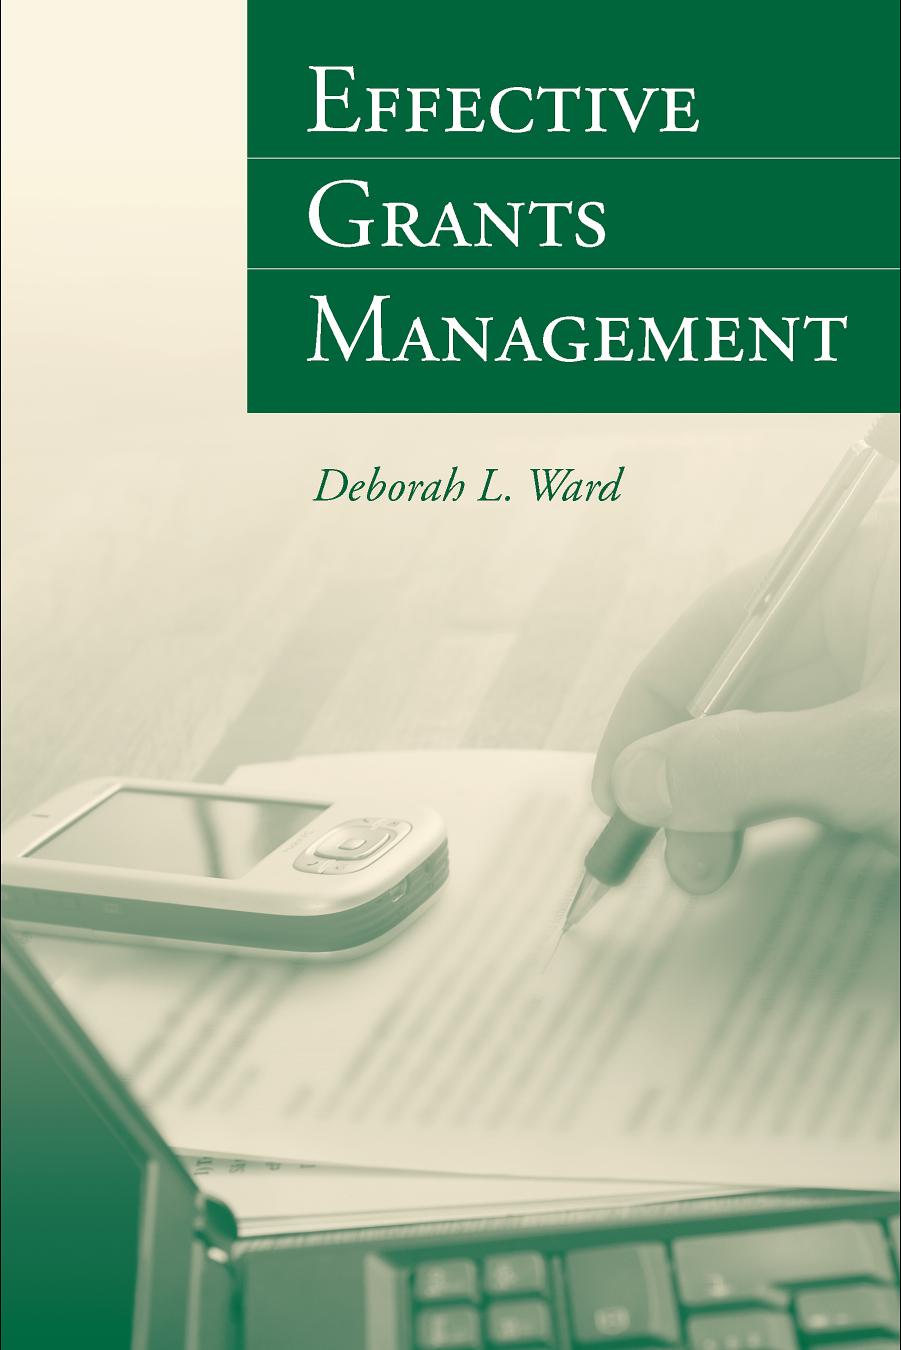 Effective Grants Management by Deborah L. Ward